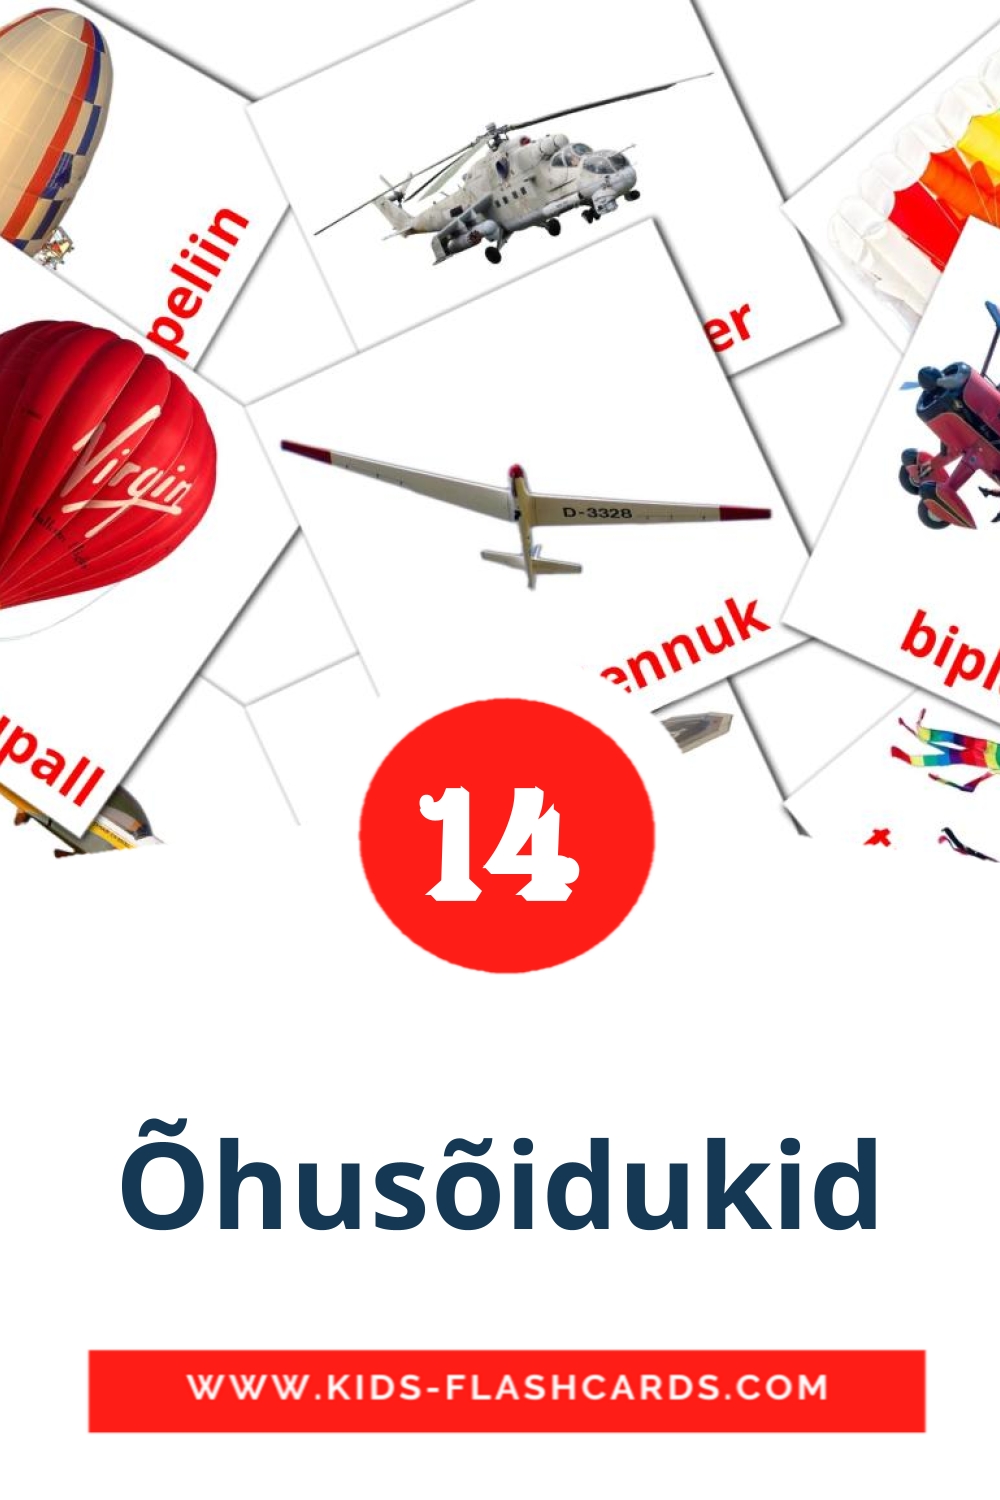 14 Õhusõidukid fotokaarten voor kleuters in het estlands